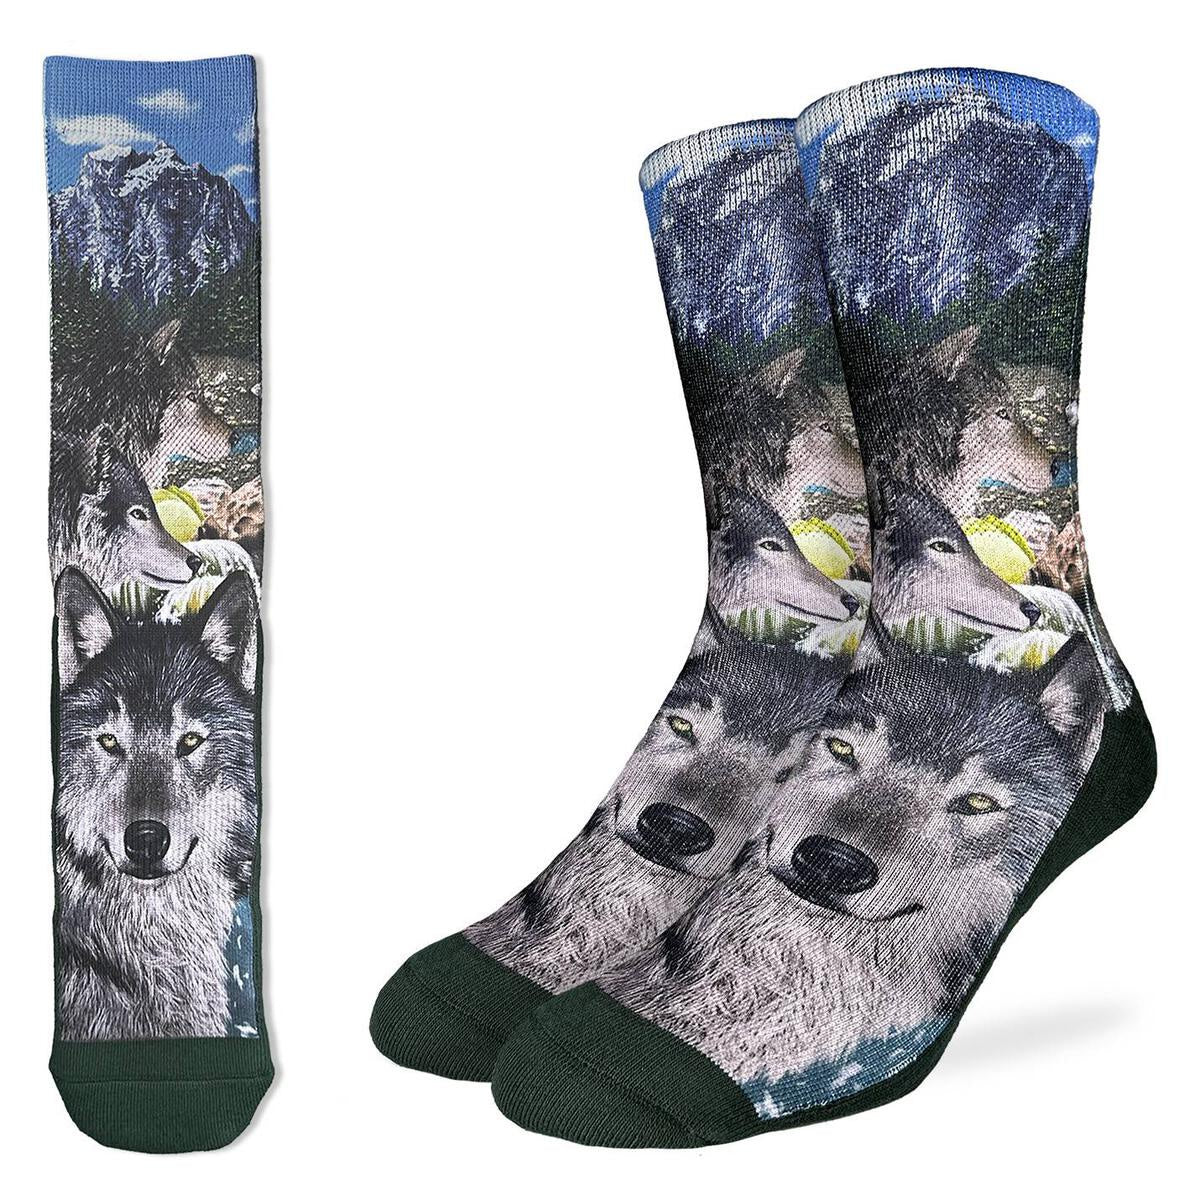 Pack of Wolves Socks (Size 8-13)